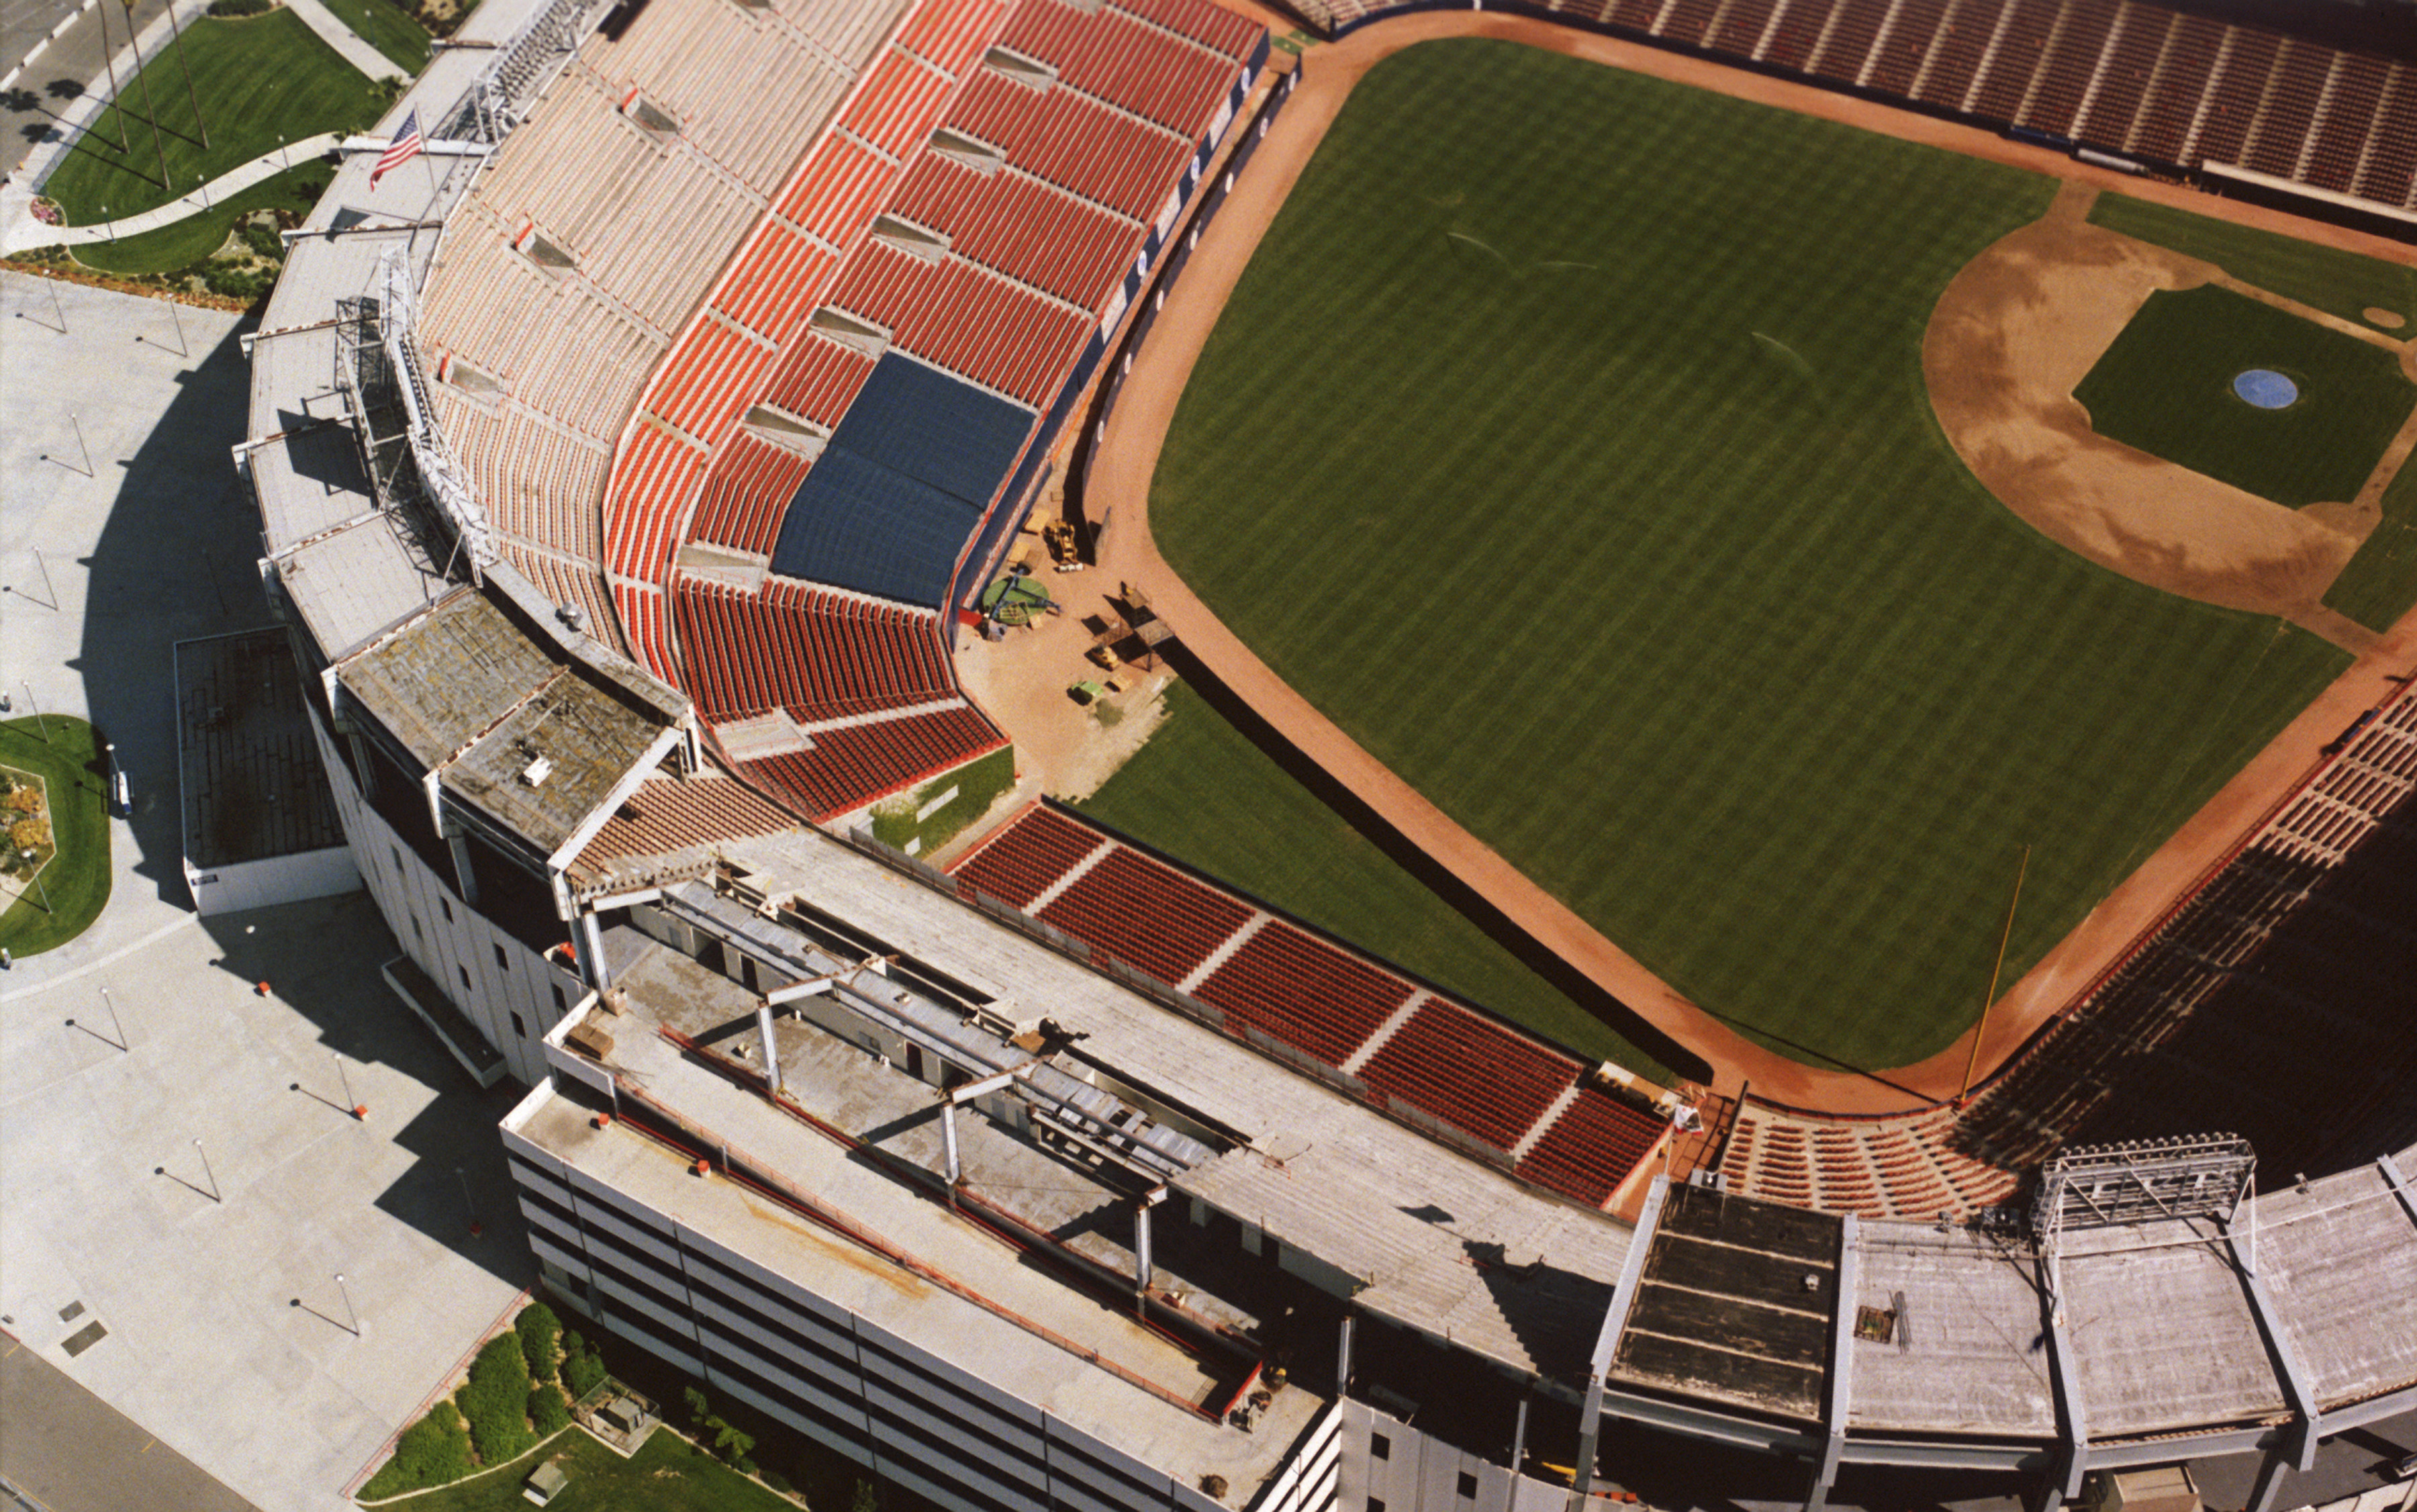 Aerial view of baseball stadium